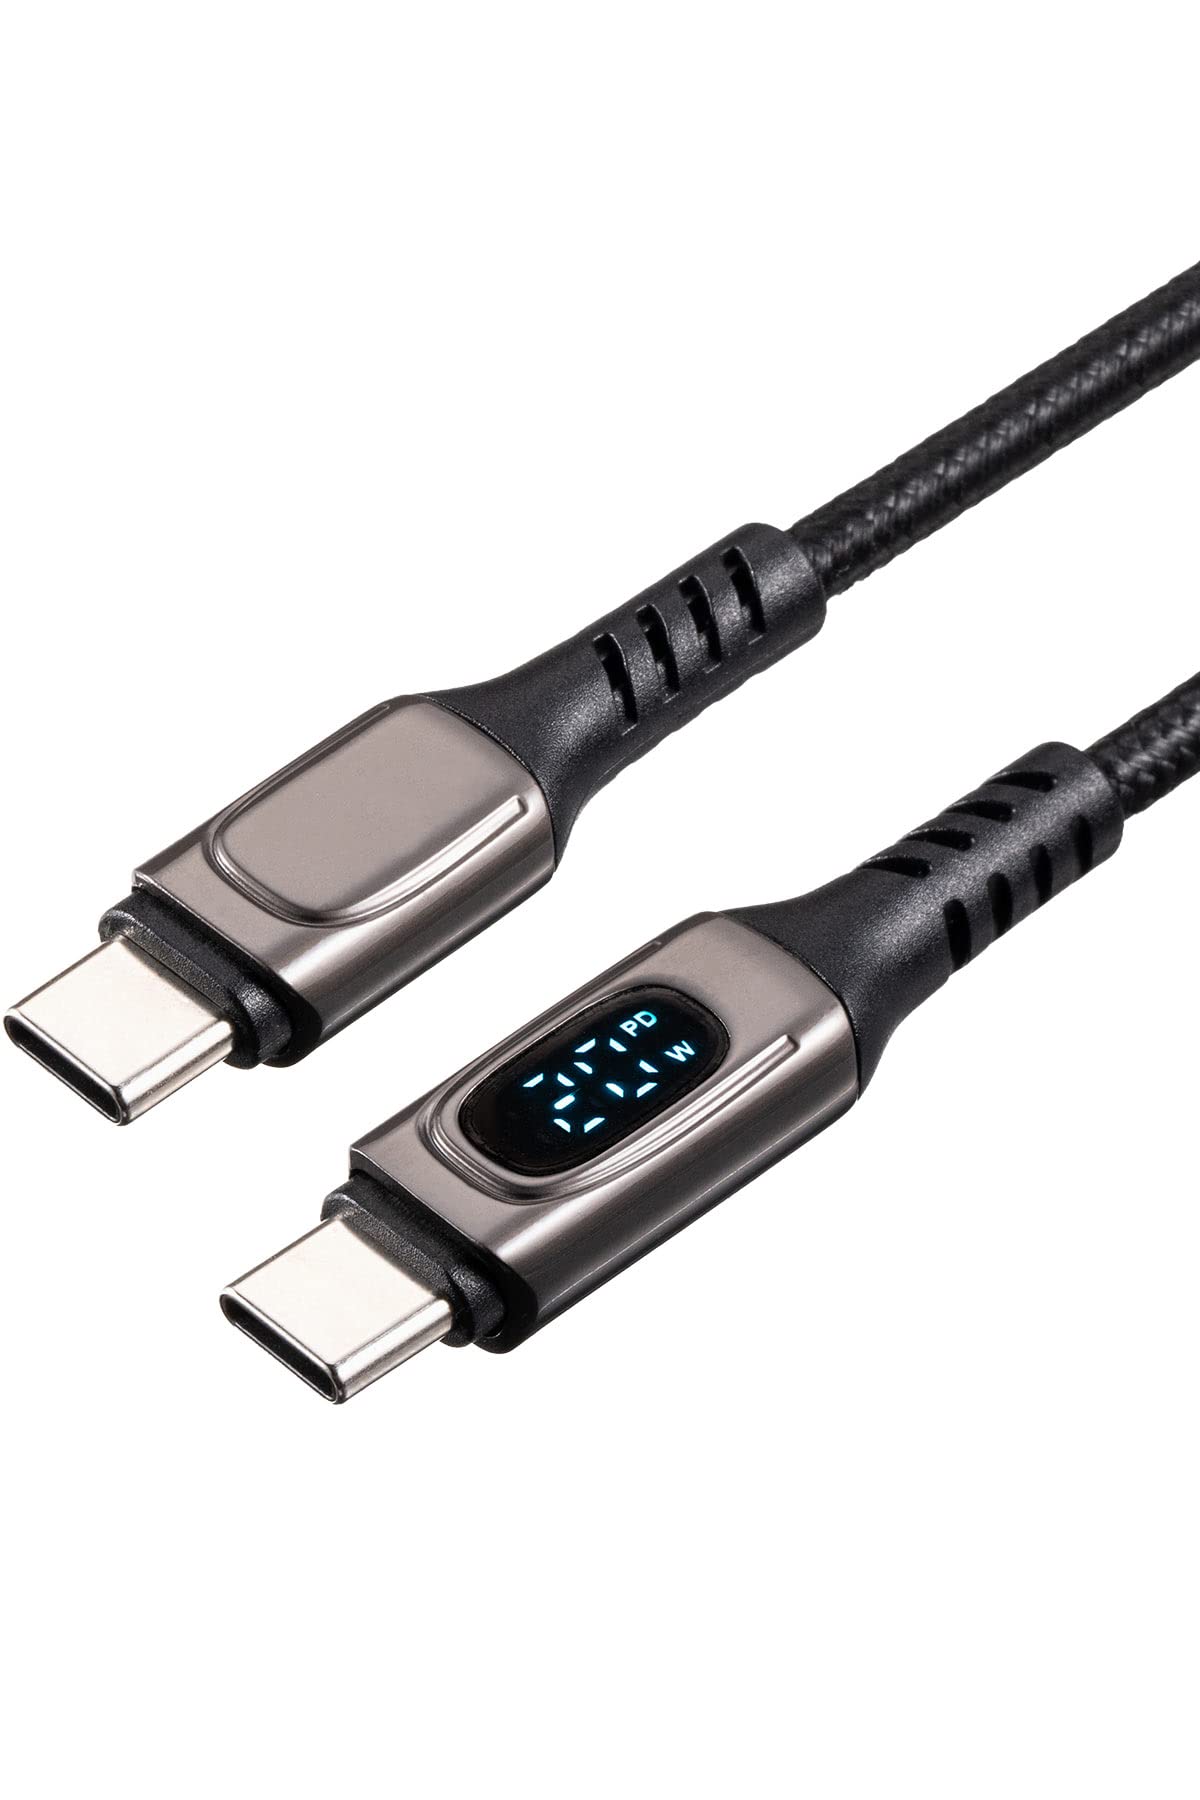 サンワダイレクト USB-C ケーブル 1m PD100W対応 PD電力表示機能付き 高耐久 MacBook Pro/iPad Pro/Galaxy等対応 ブラック 500-USB076